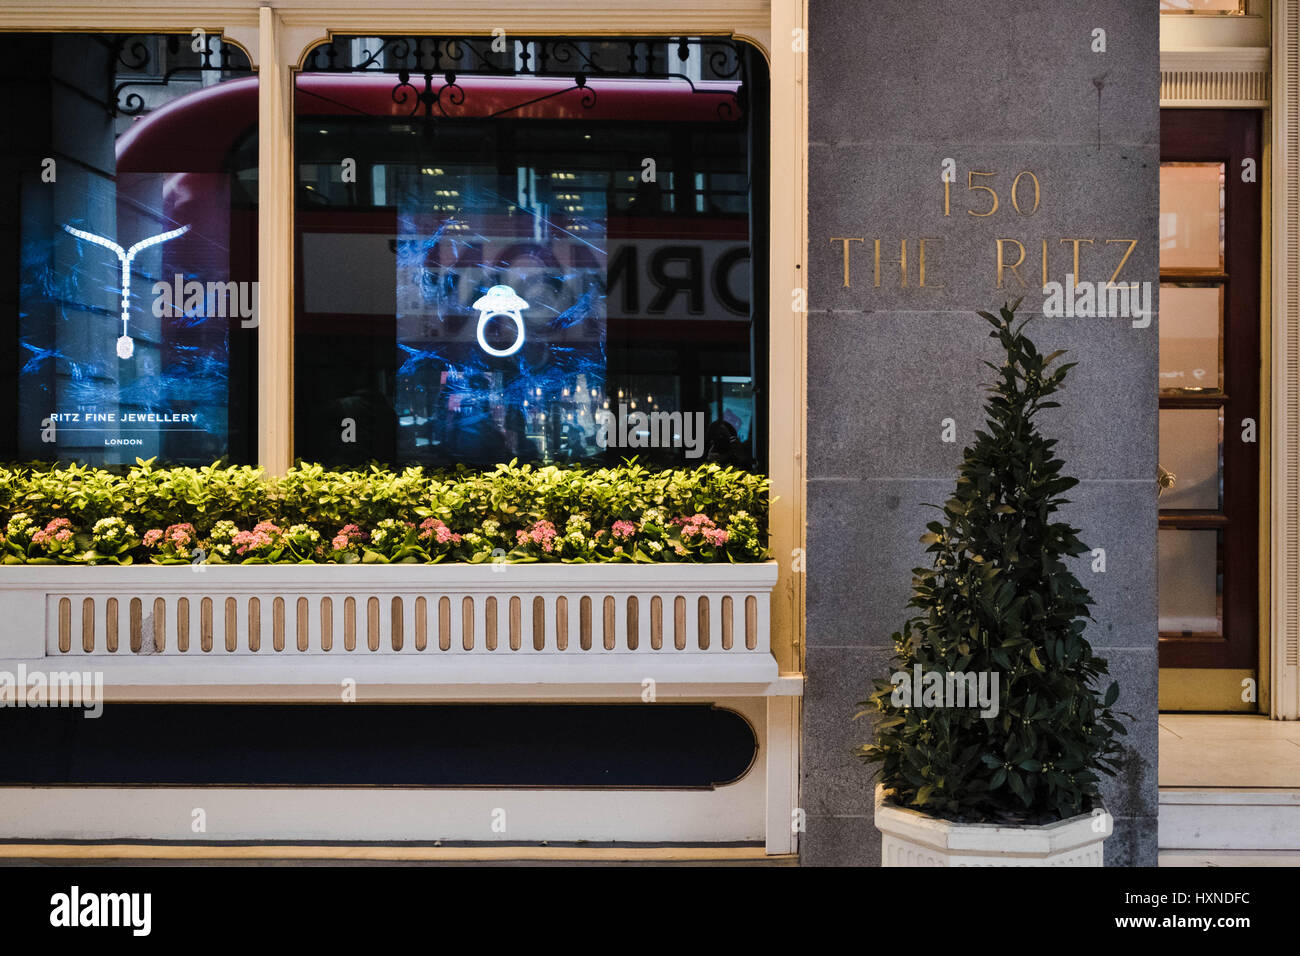 Image en couleur d'un gros plan d'une enseigne au Ritz Hôtel de luxe sur Piccadilly, Londres en affichant une fenêtre de la publicité pour leurs bijoux de qualité et d'un bus. Banque D'Images